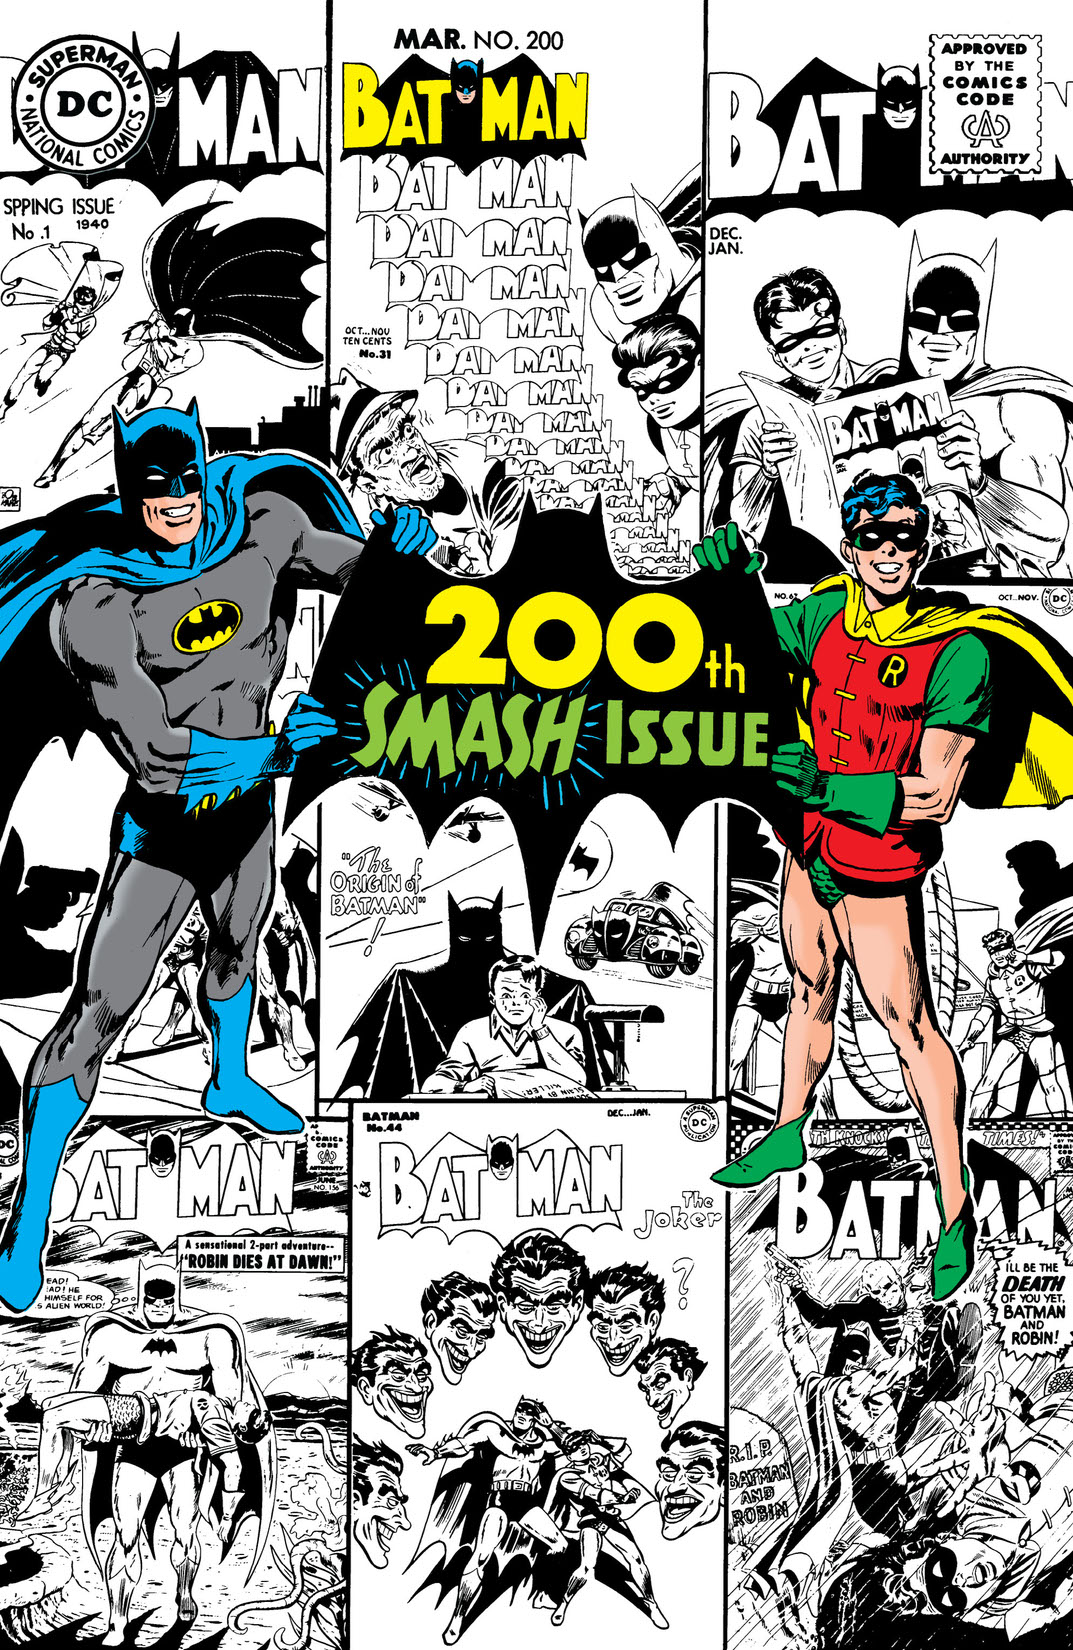 Batman (1940-) #200 preview images